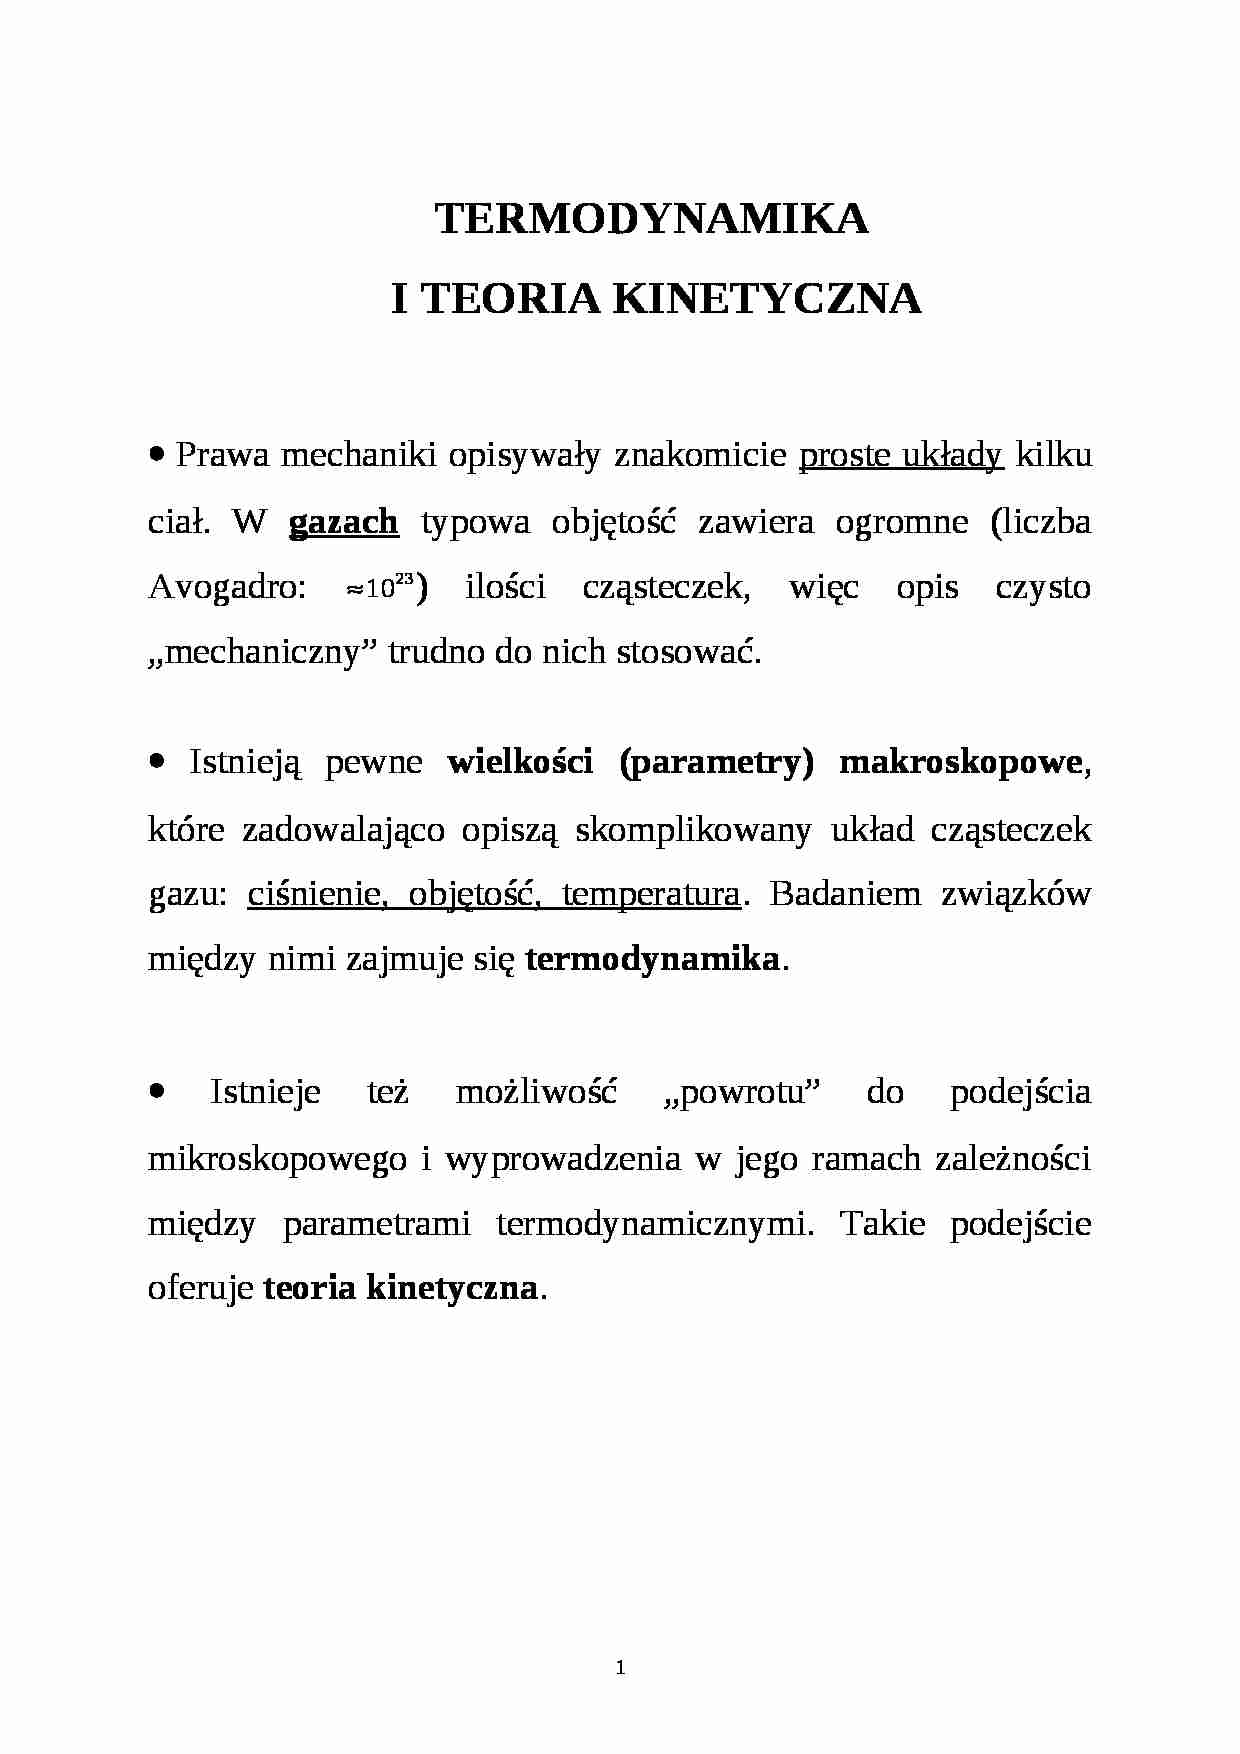 Teoria kinetyczna, termodynamika - strona 1